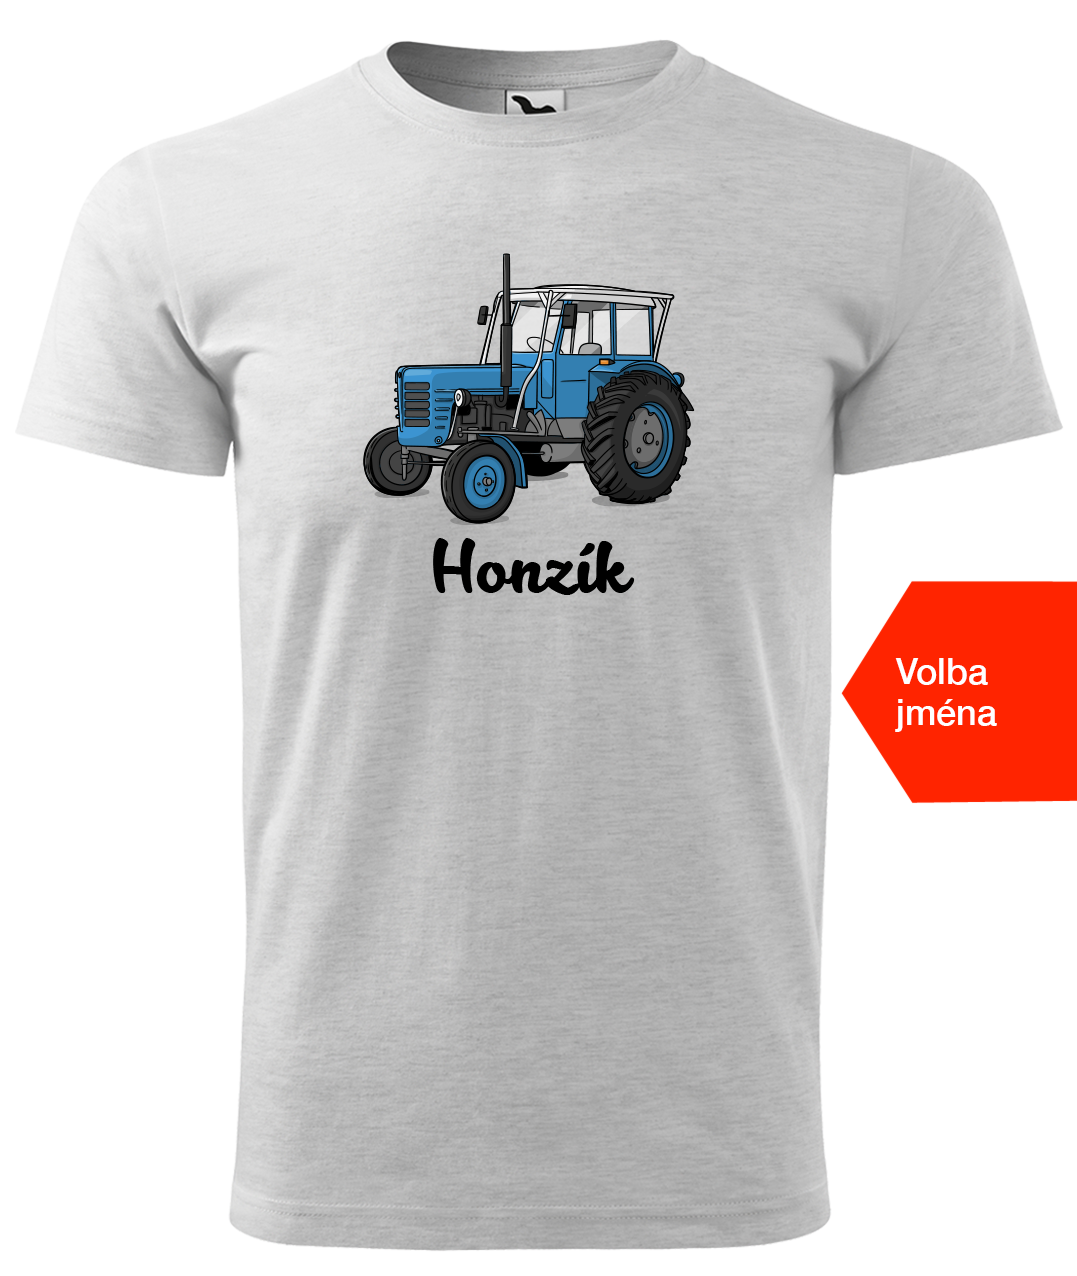 Dětské tričko s traktorem a jménem - Starý traktor Velikost: 8 let / 134 cm, Barva: Světle šedý melír (03)